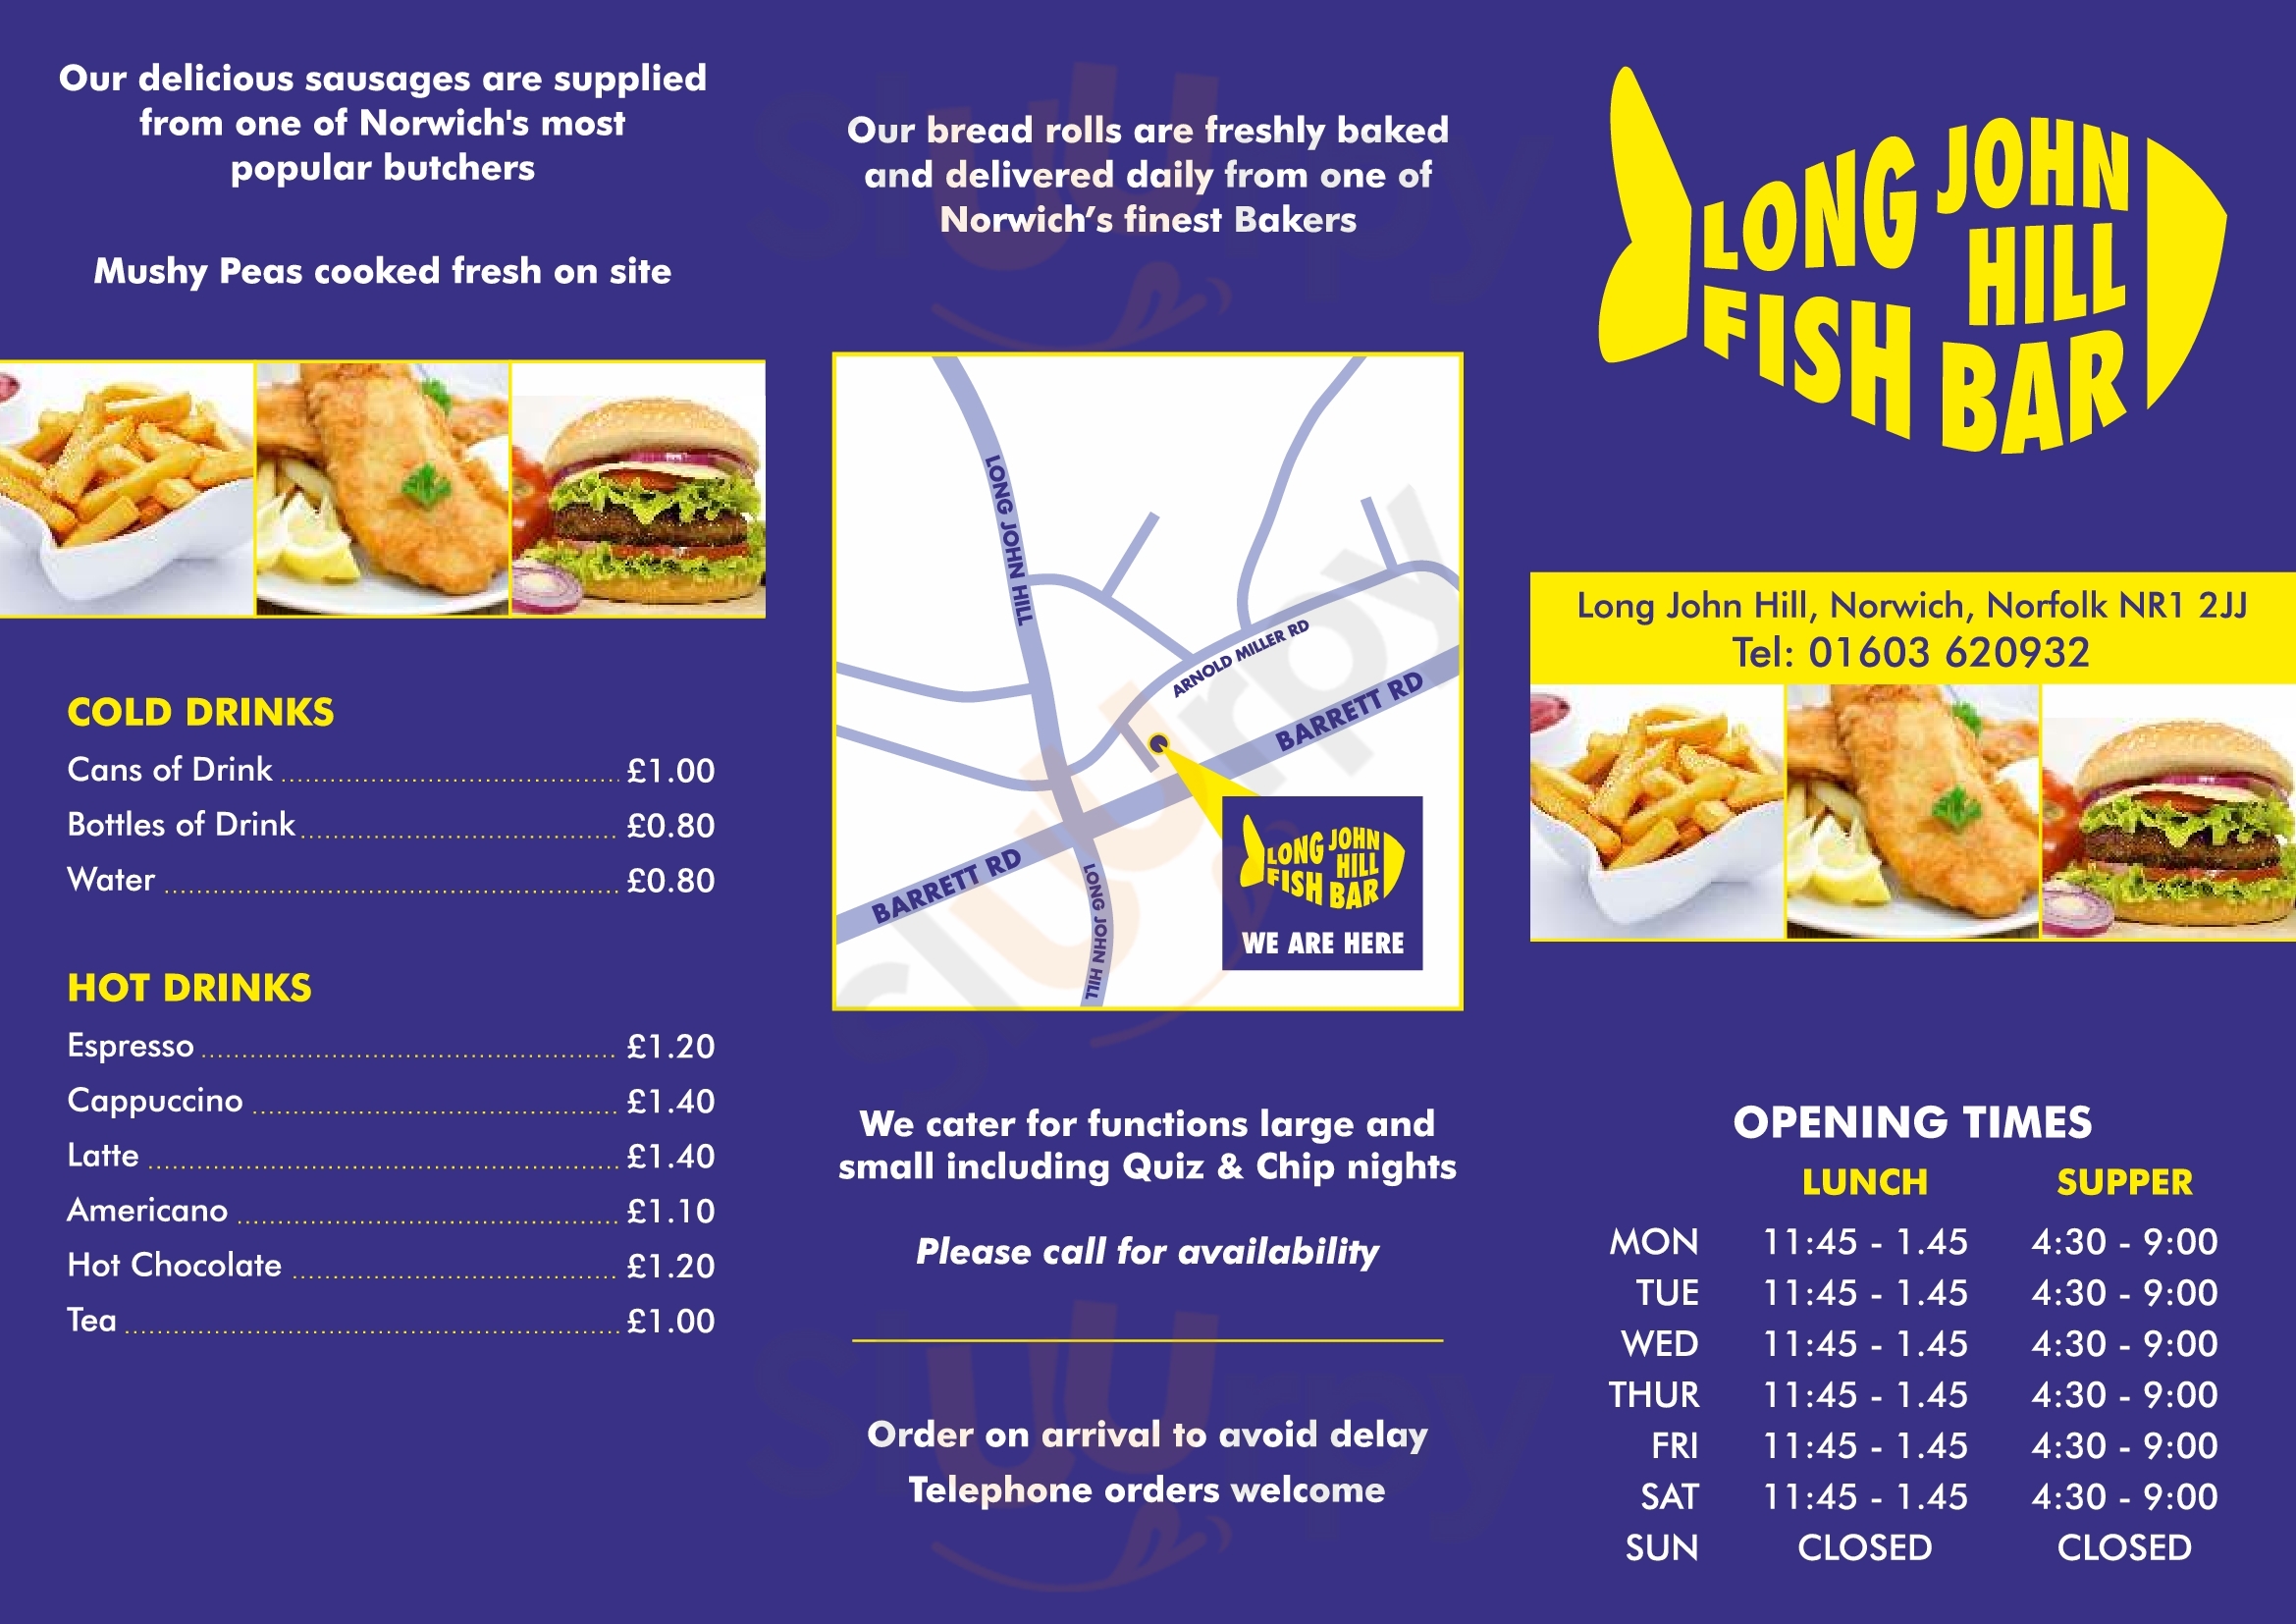 Long John Hill Fish Bar Norwich Menu - 1